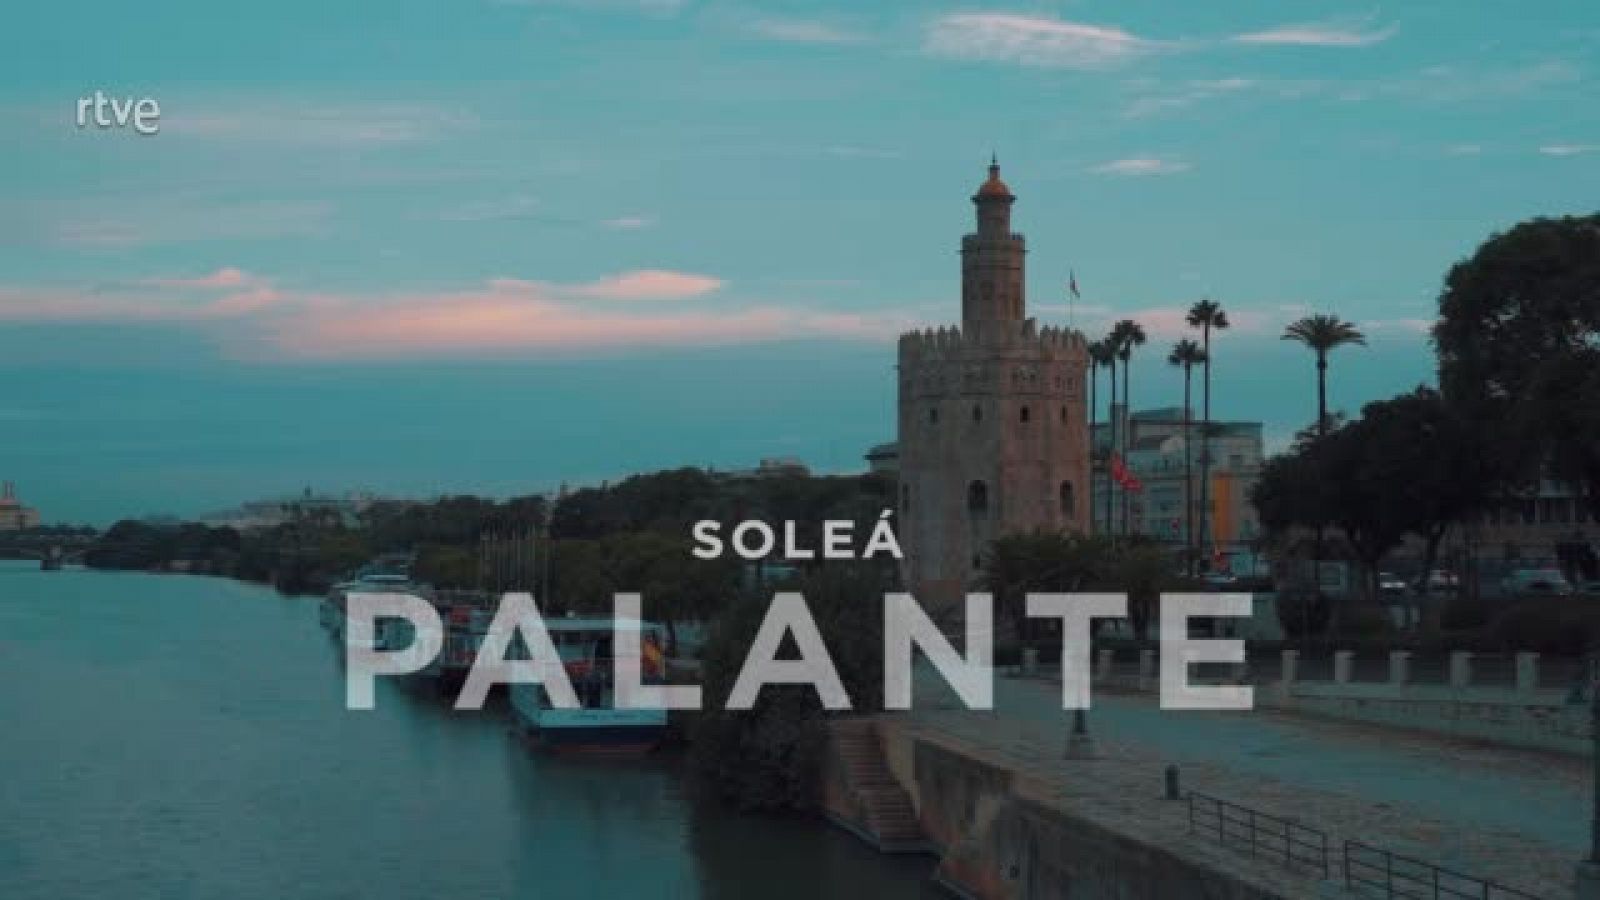 Eurovisión Junior 2020 - Videoclip de "Palante", la canción Soleá